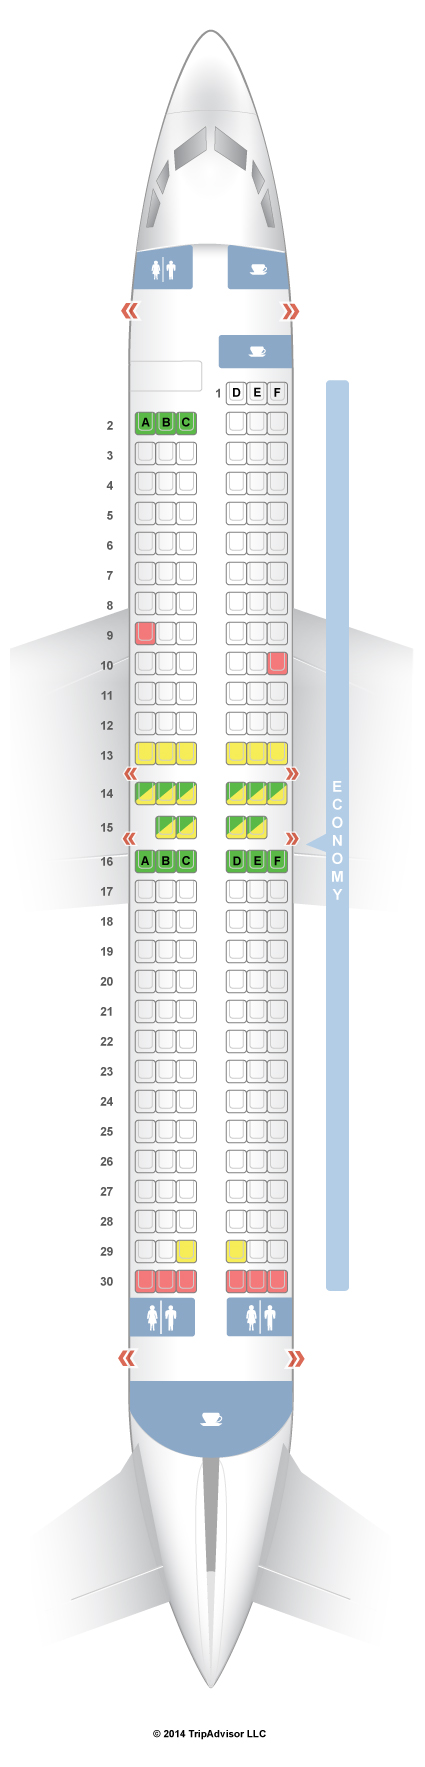 Swa Seating Chart